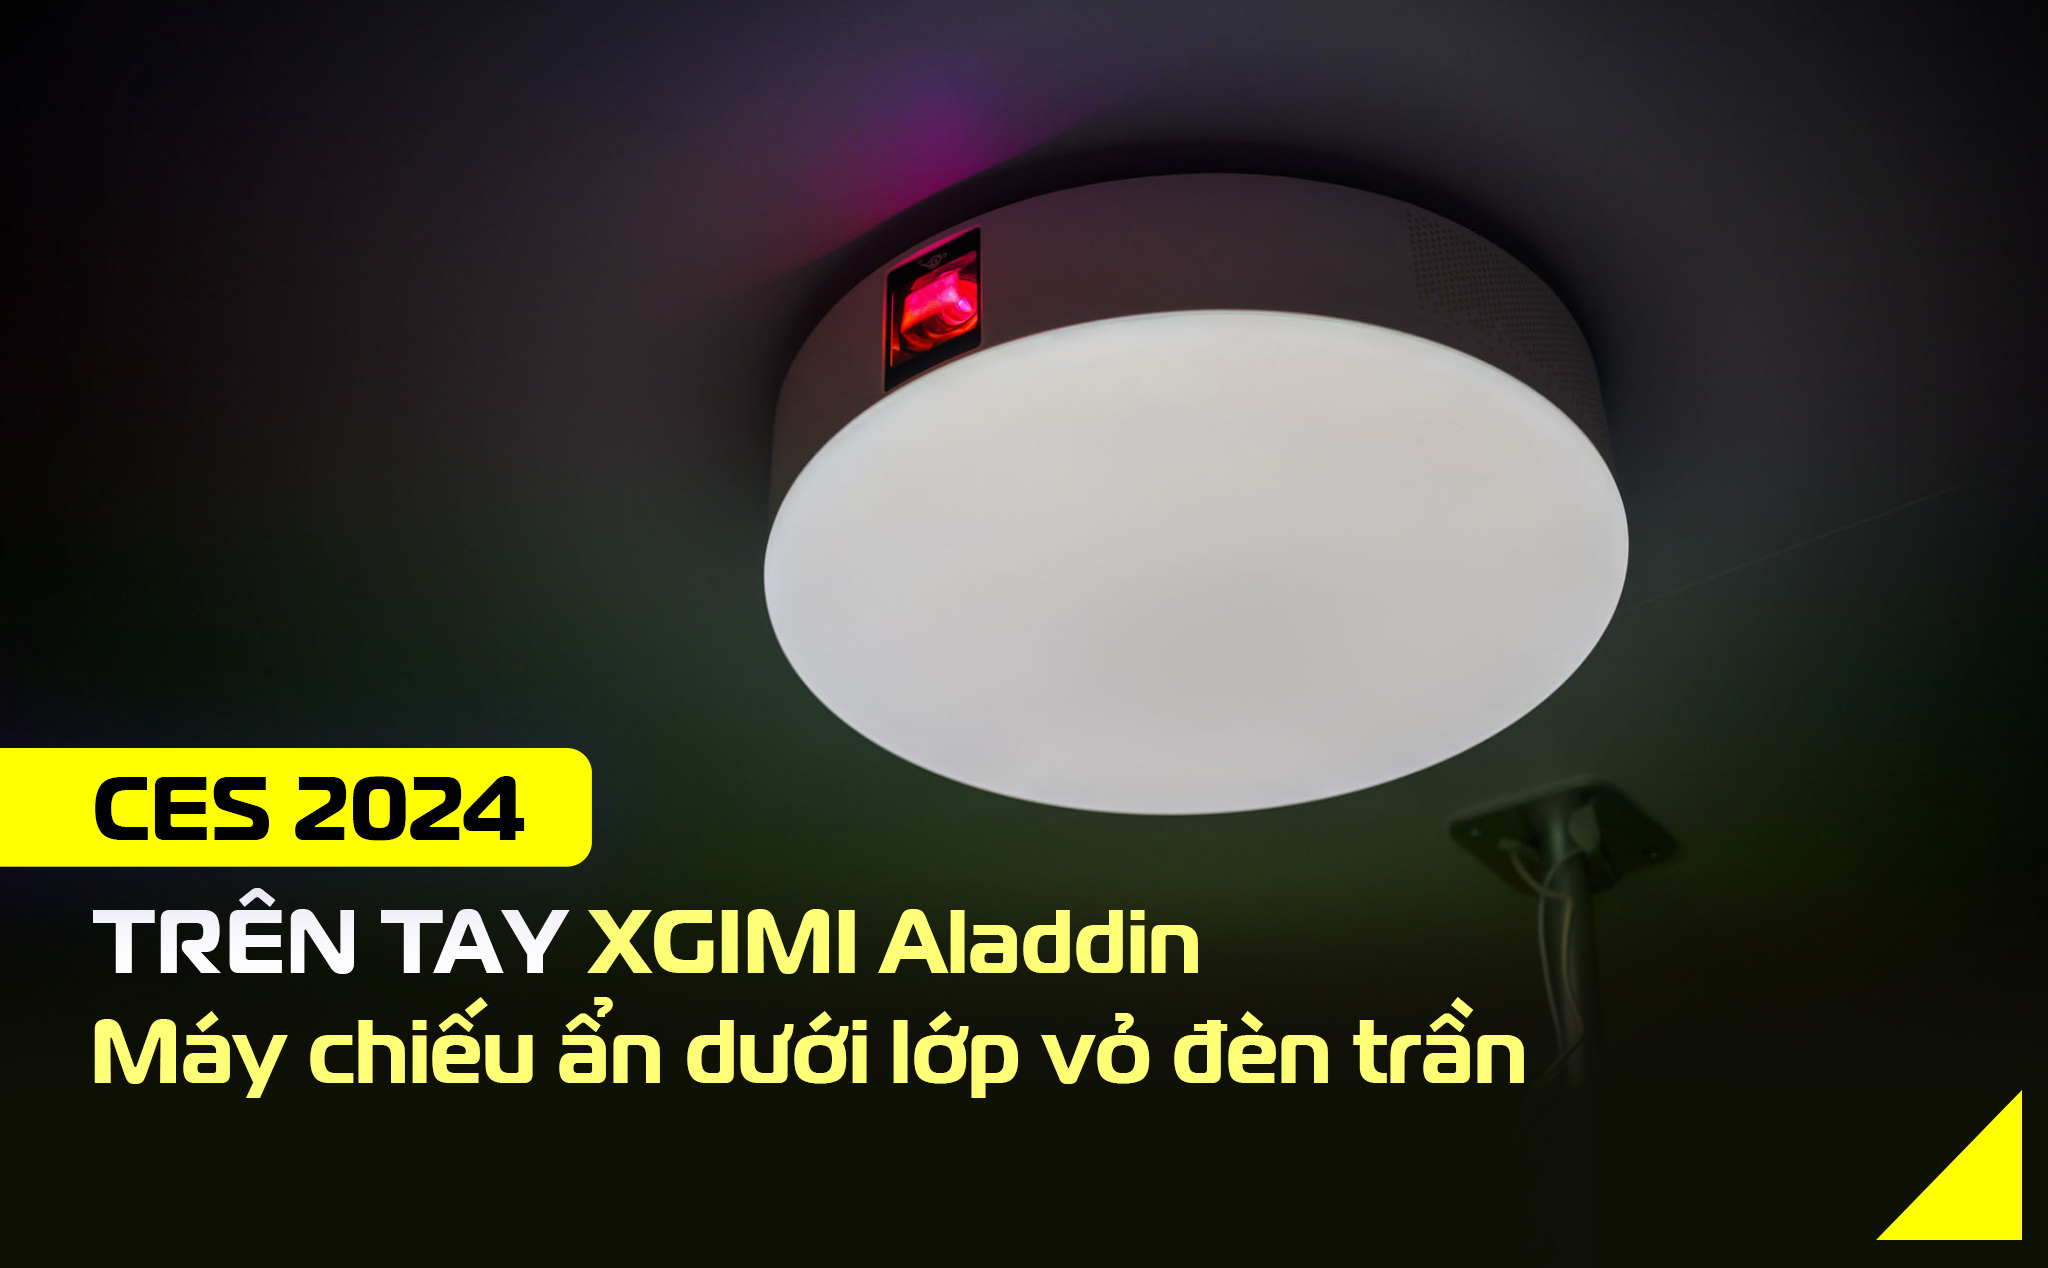 CES24: Trên tay XGIMI Aladdin - Máy chiếu ẩn dưới lớp vỏ đèn trần